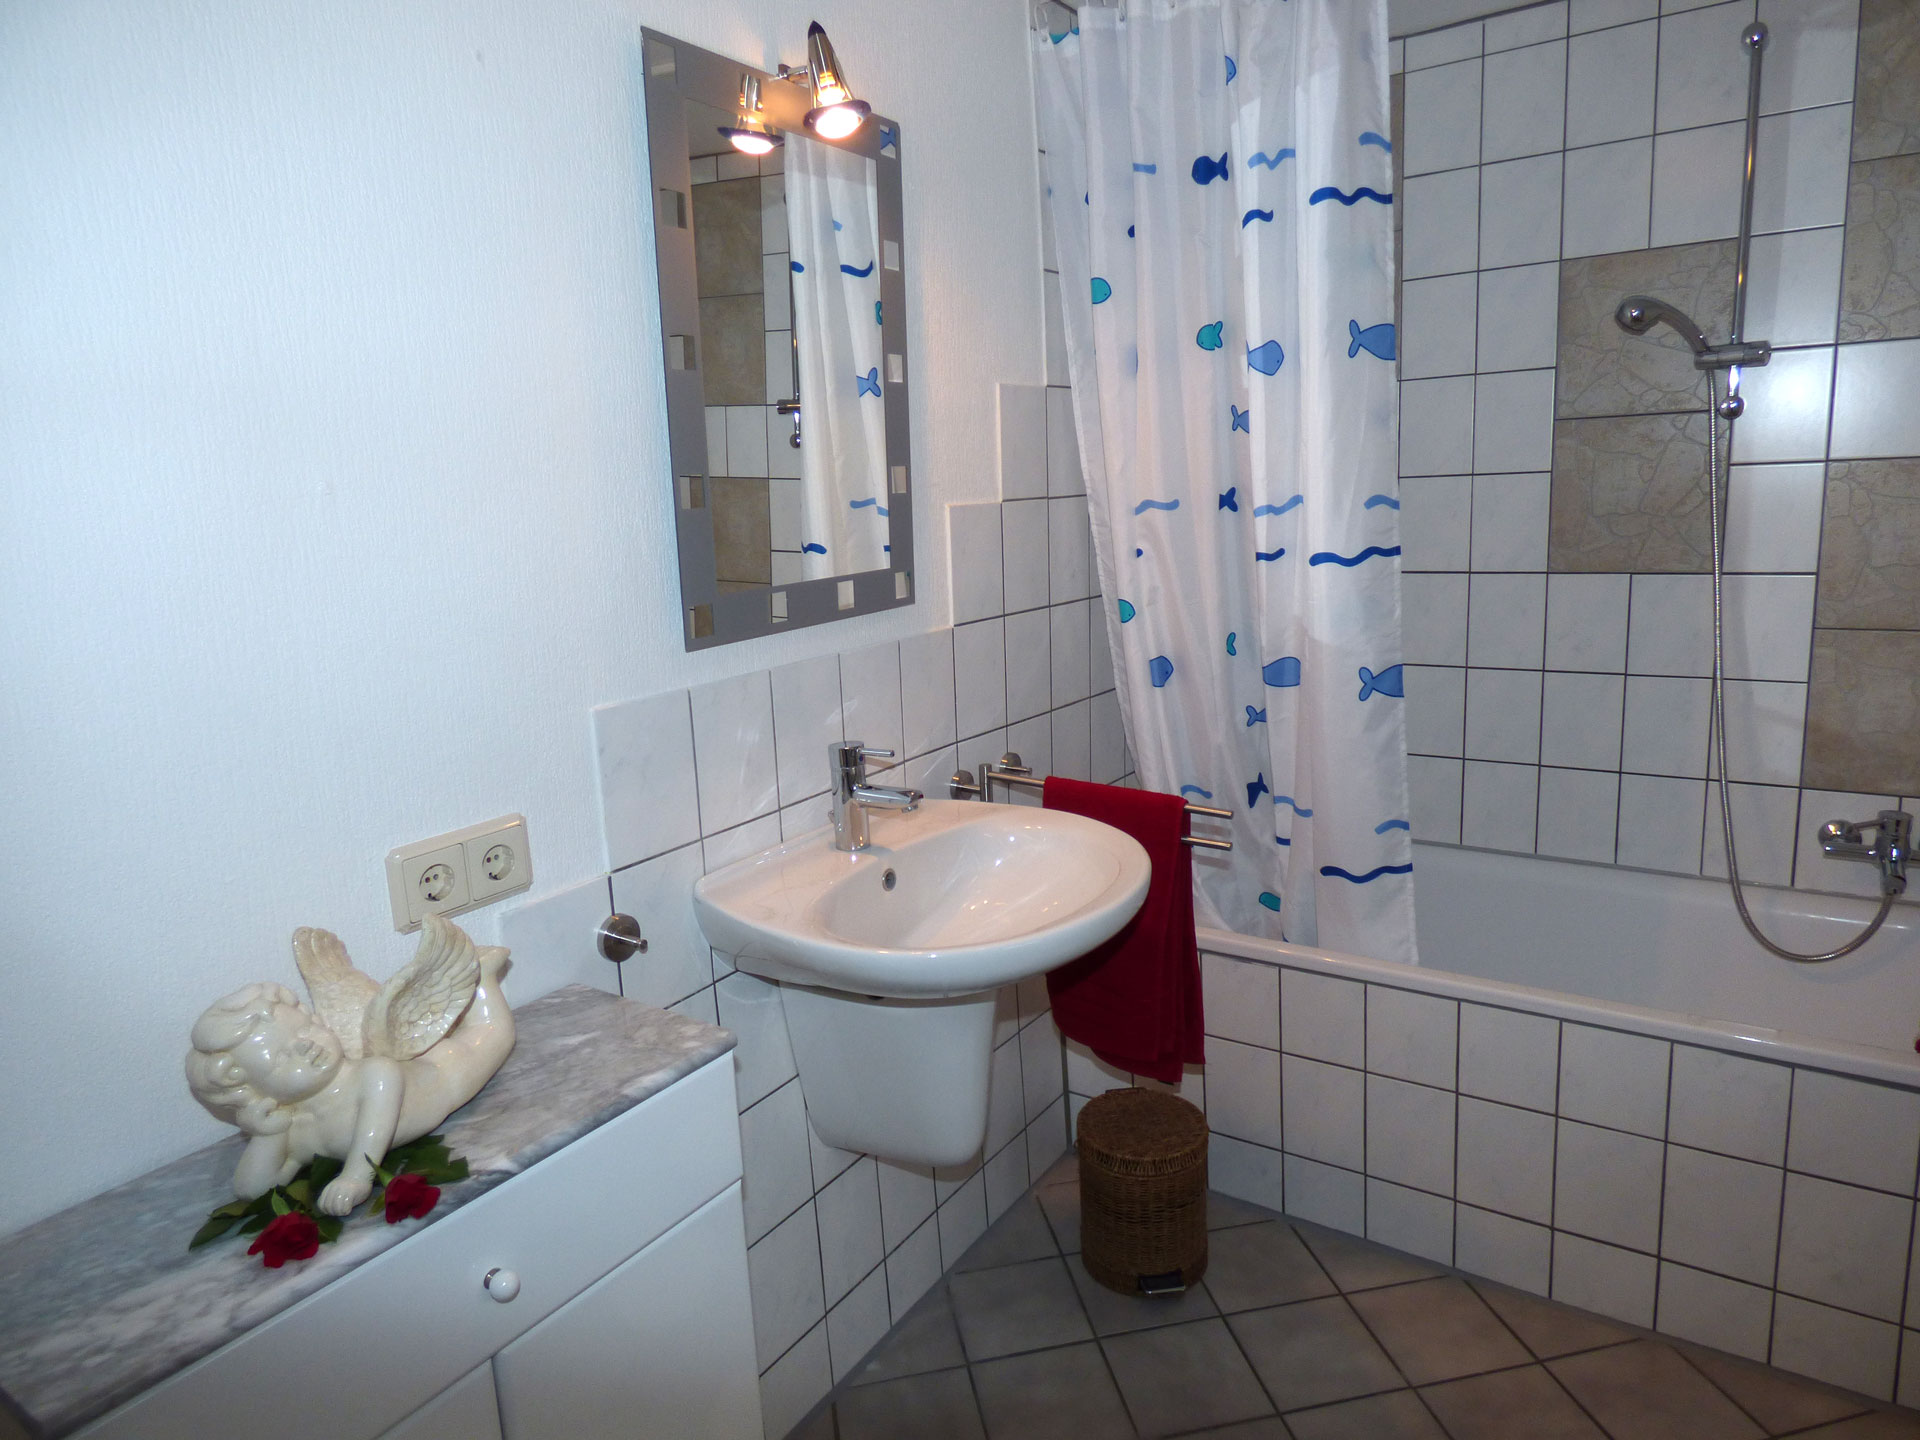 Ferienhaus in der Eifel und ein helles Badezimmer ist auch dabei